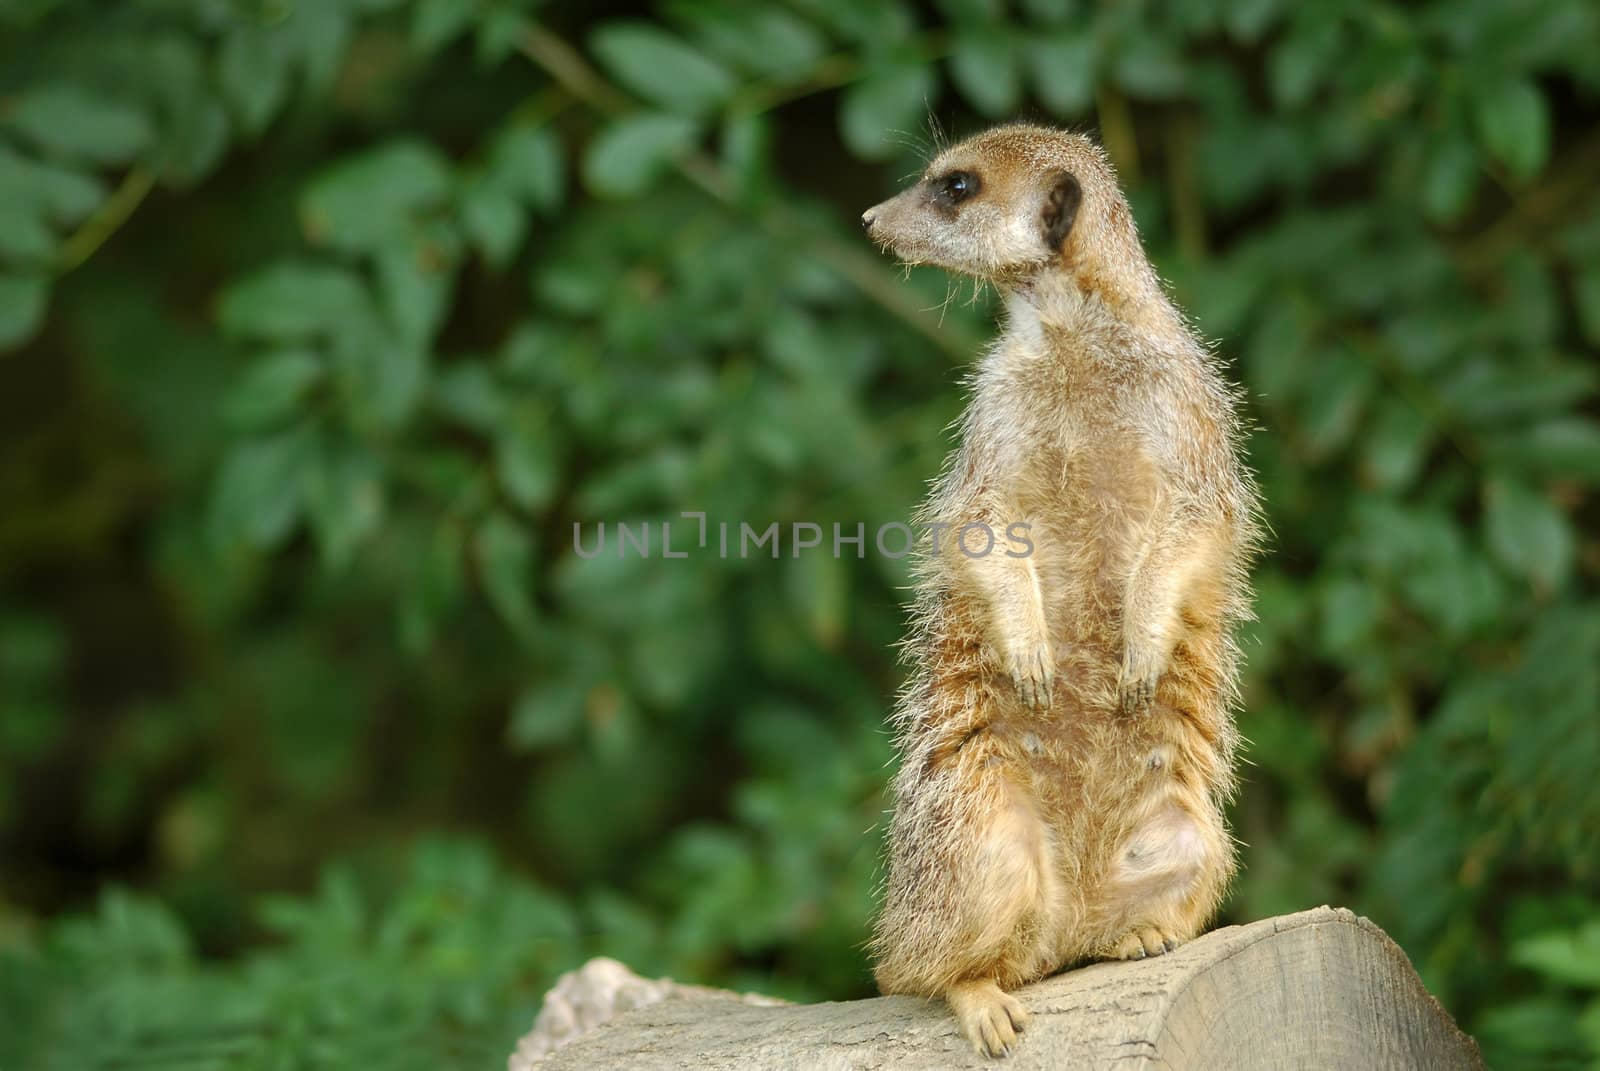 meerkat in alertness pose